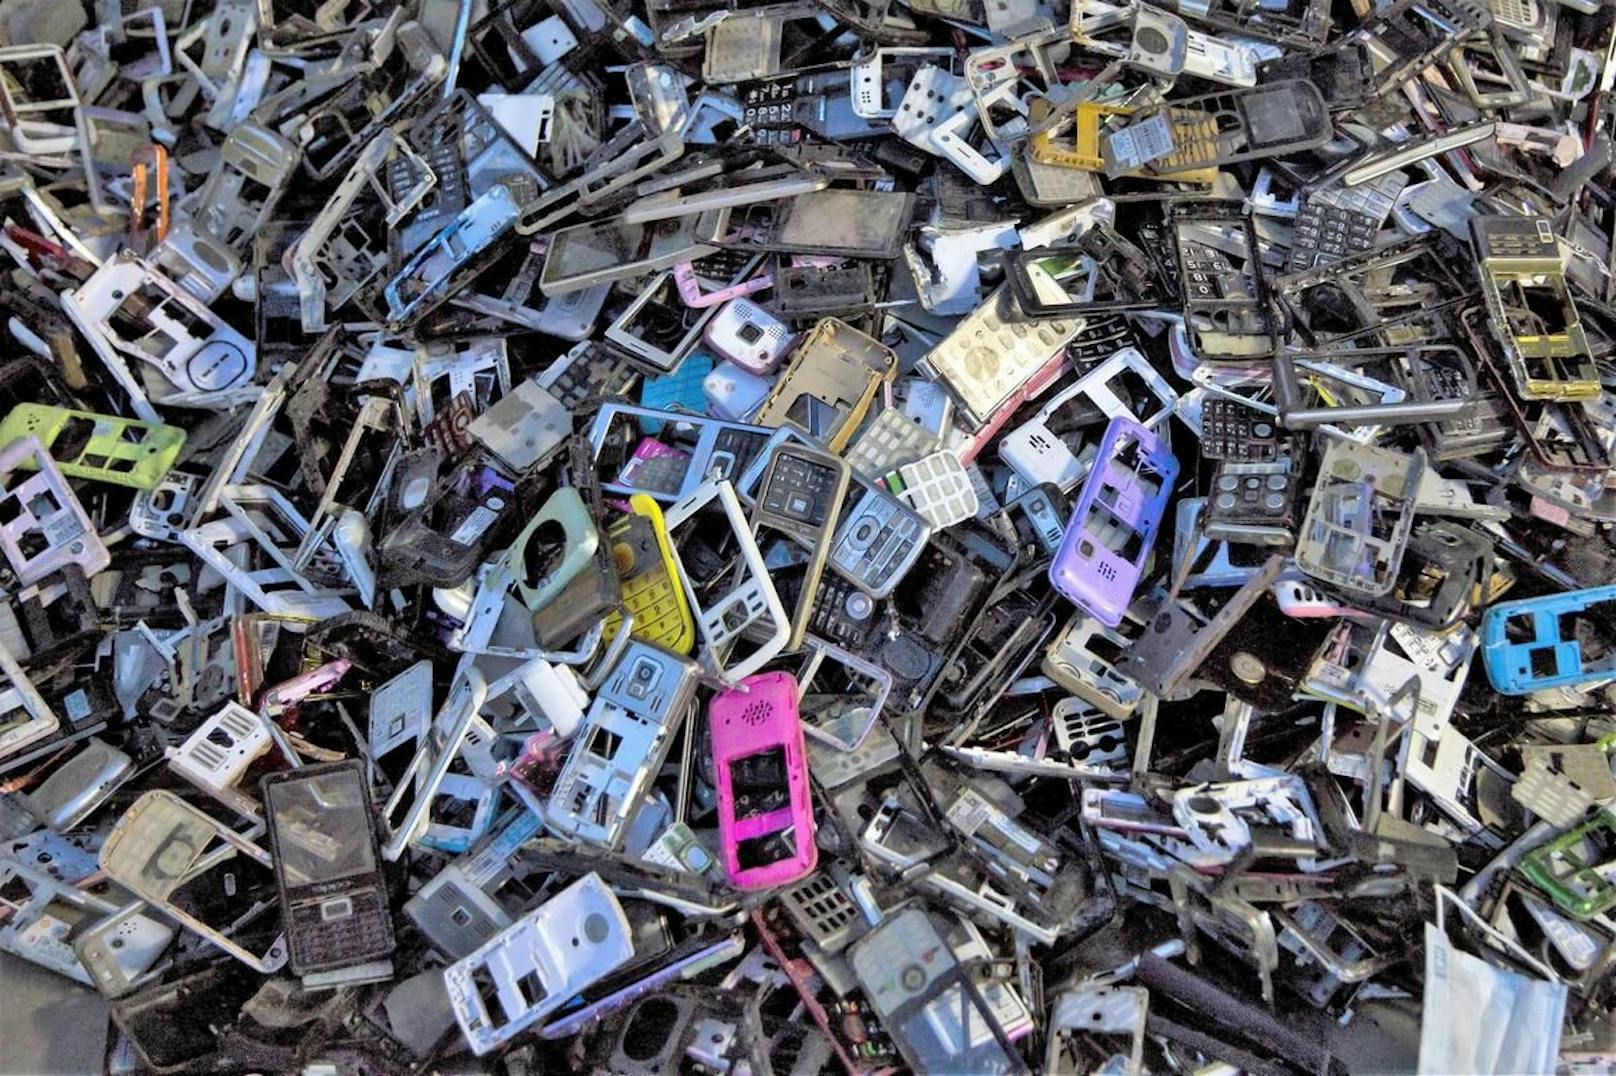 Alte Handys, soweit das Auge reicht. In alten Geräten stecken wertvolle Materialien, die recycelt werden können.